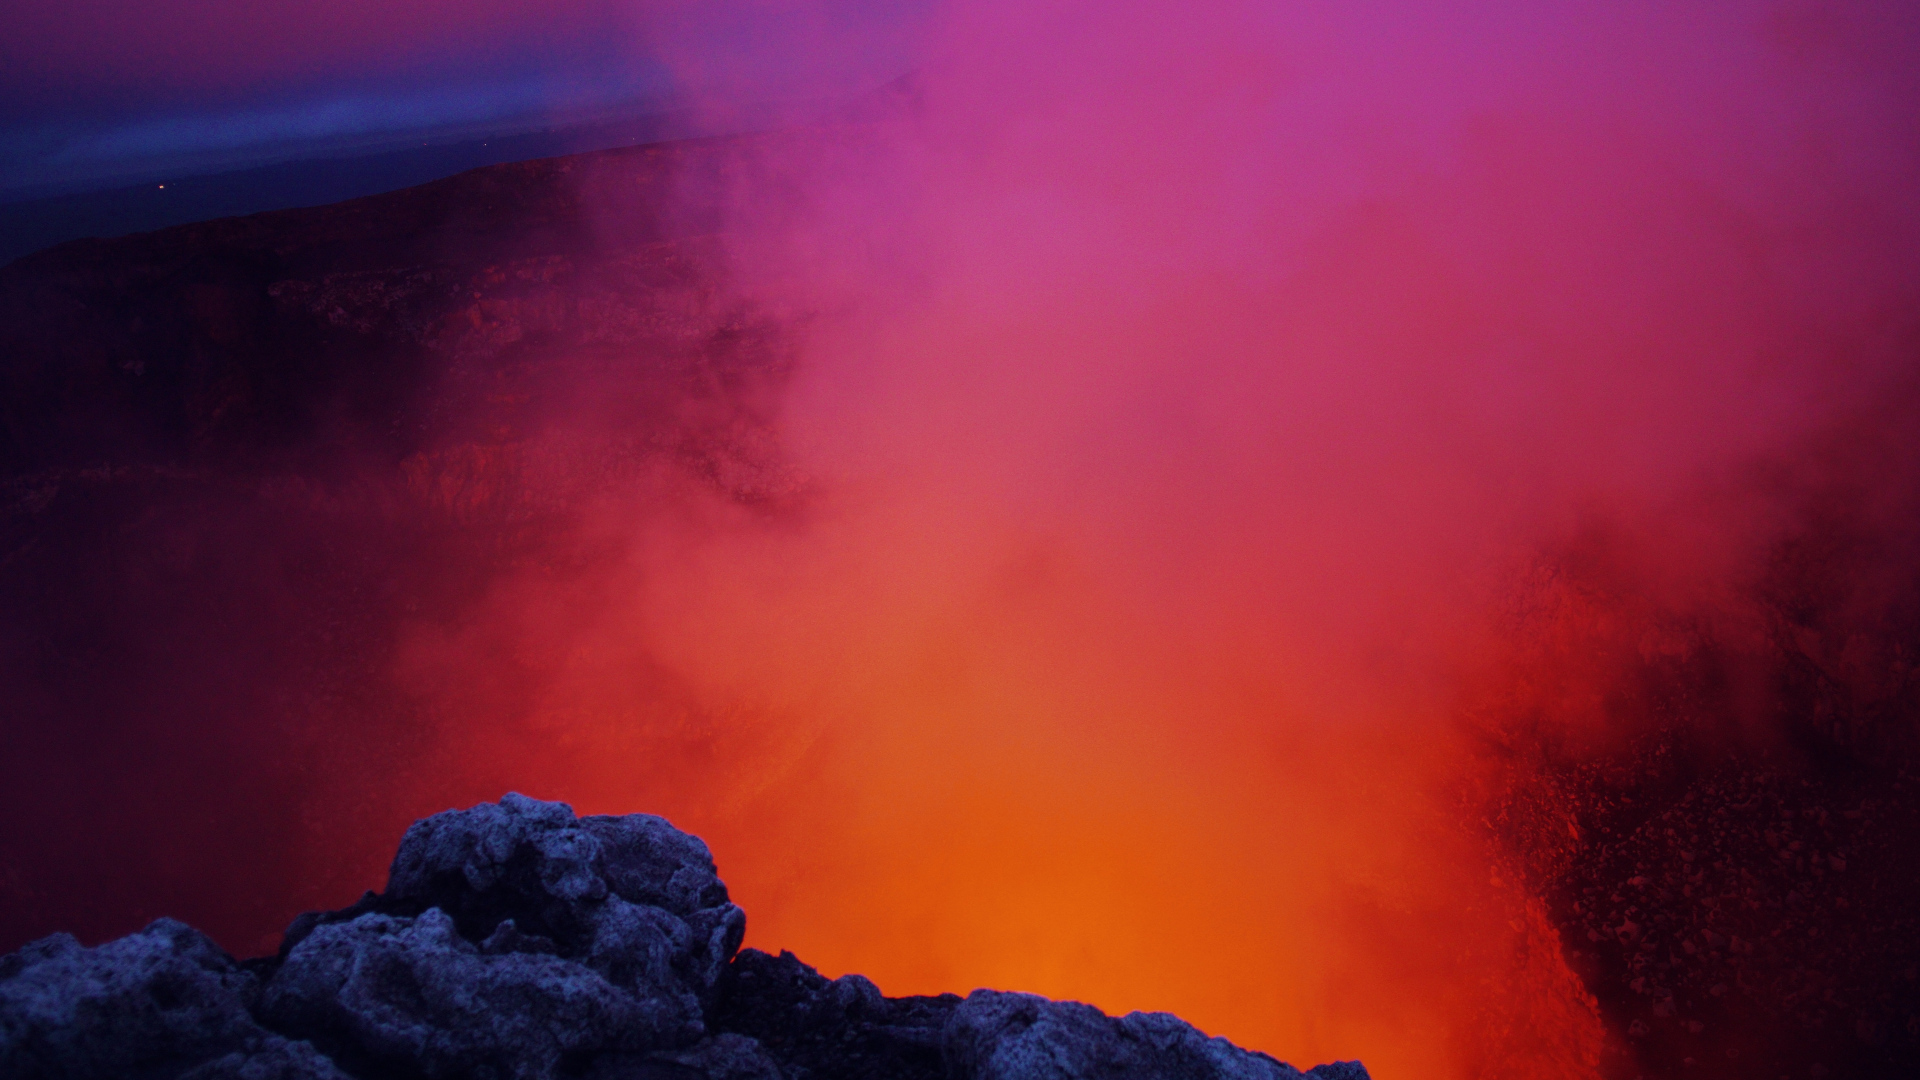 Superb Nature Volcano Pink Orange Smoke - HD Wallpapers - Free ...